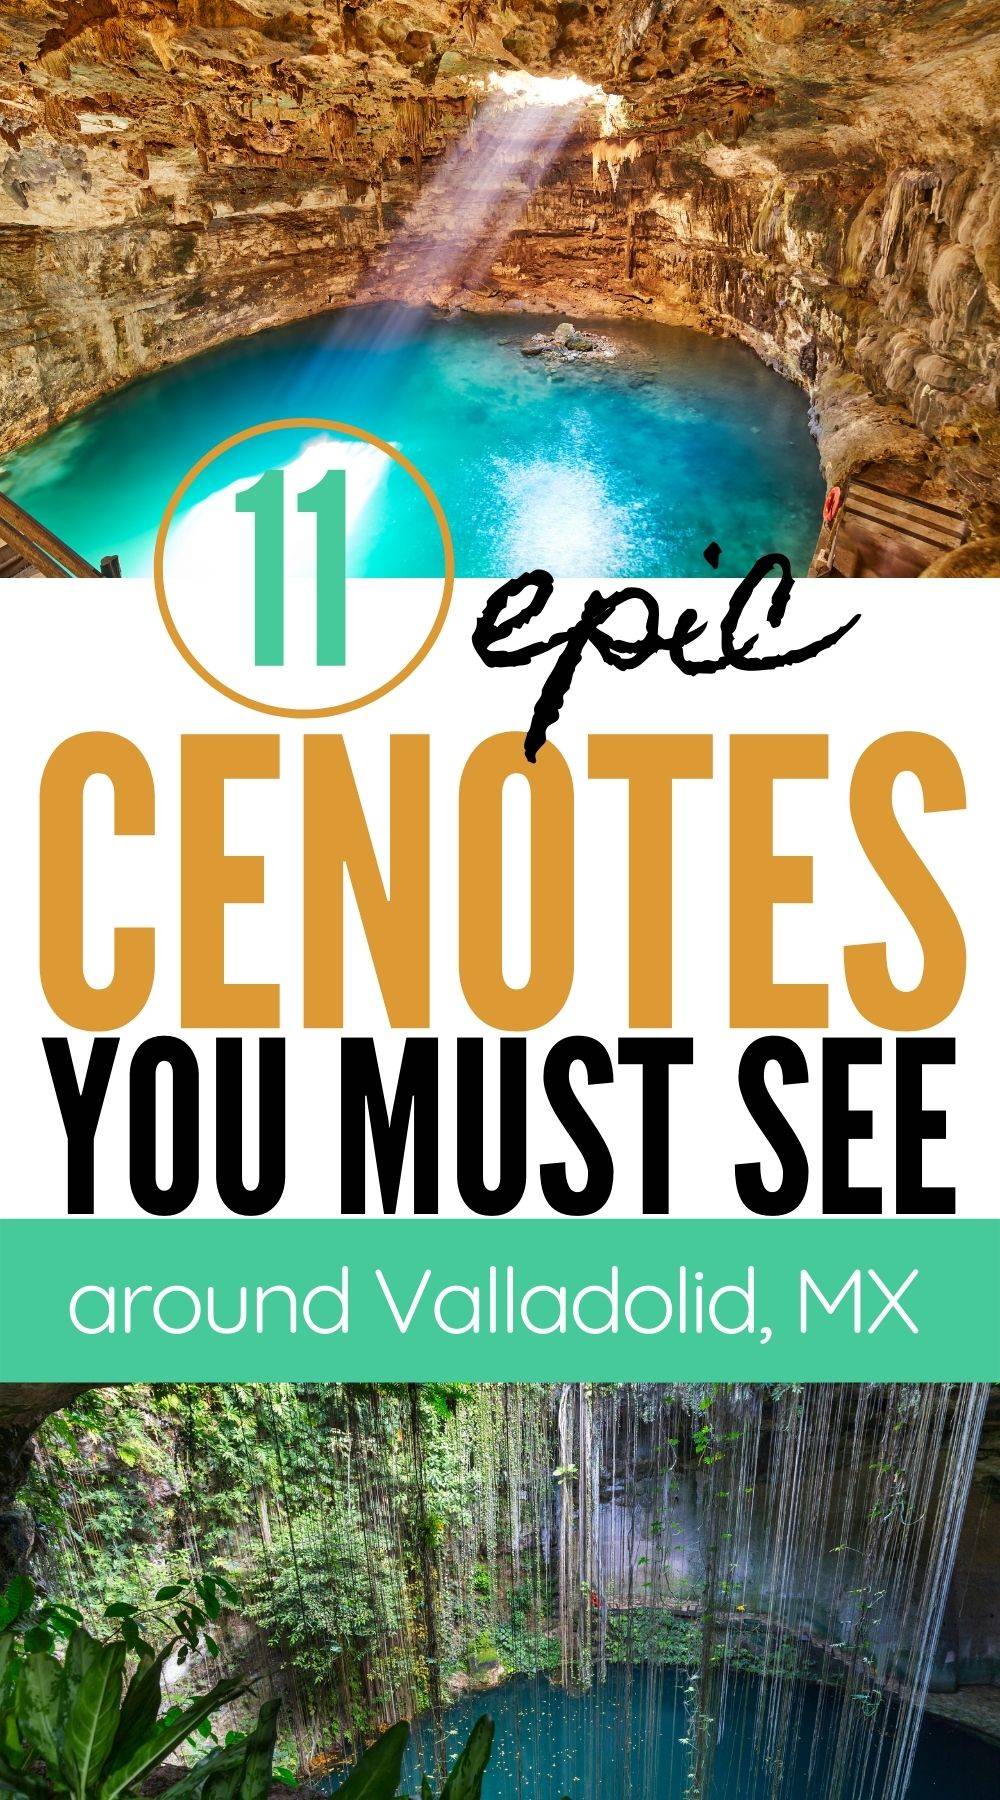 Cenotes in Valladolid, Mexico